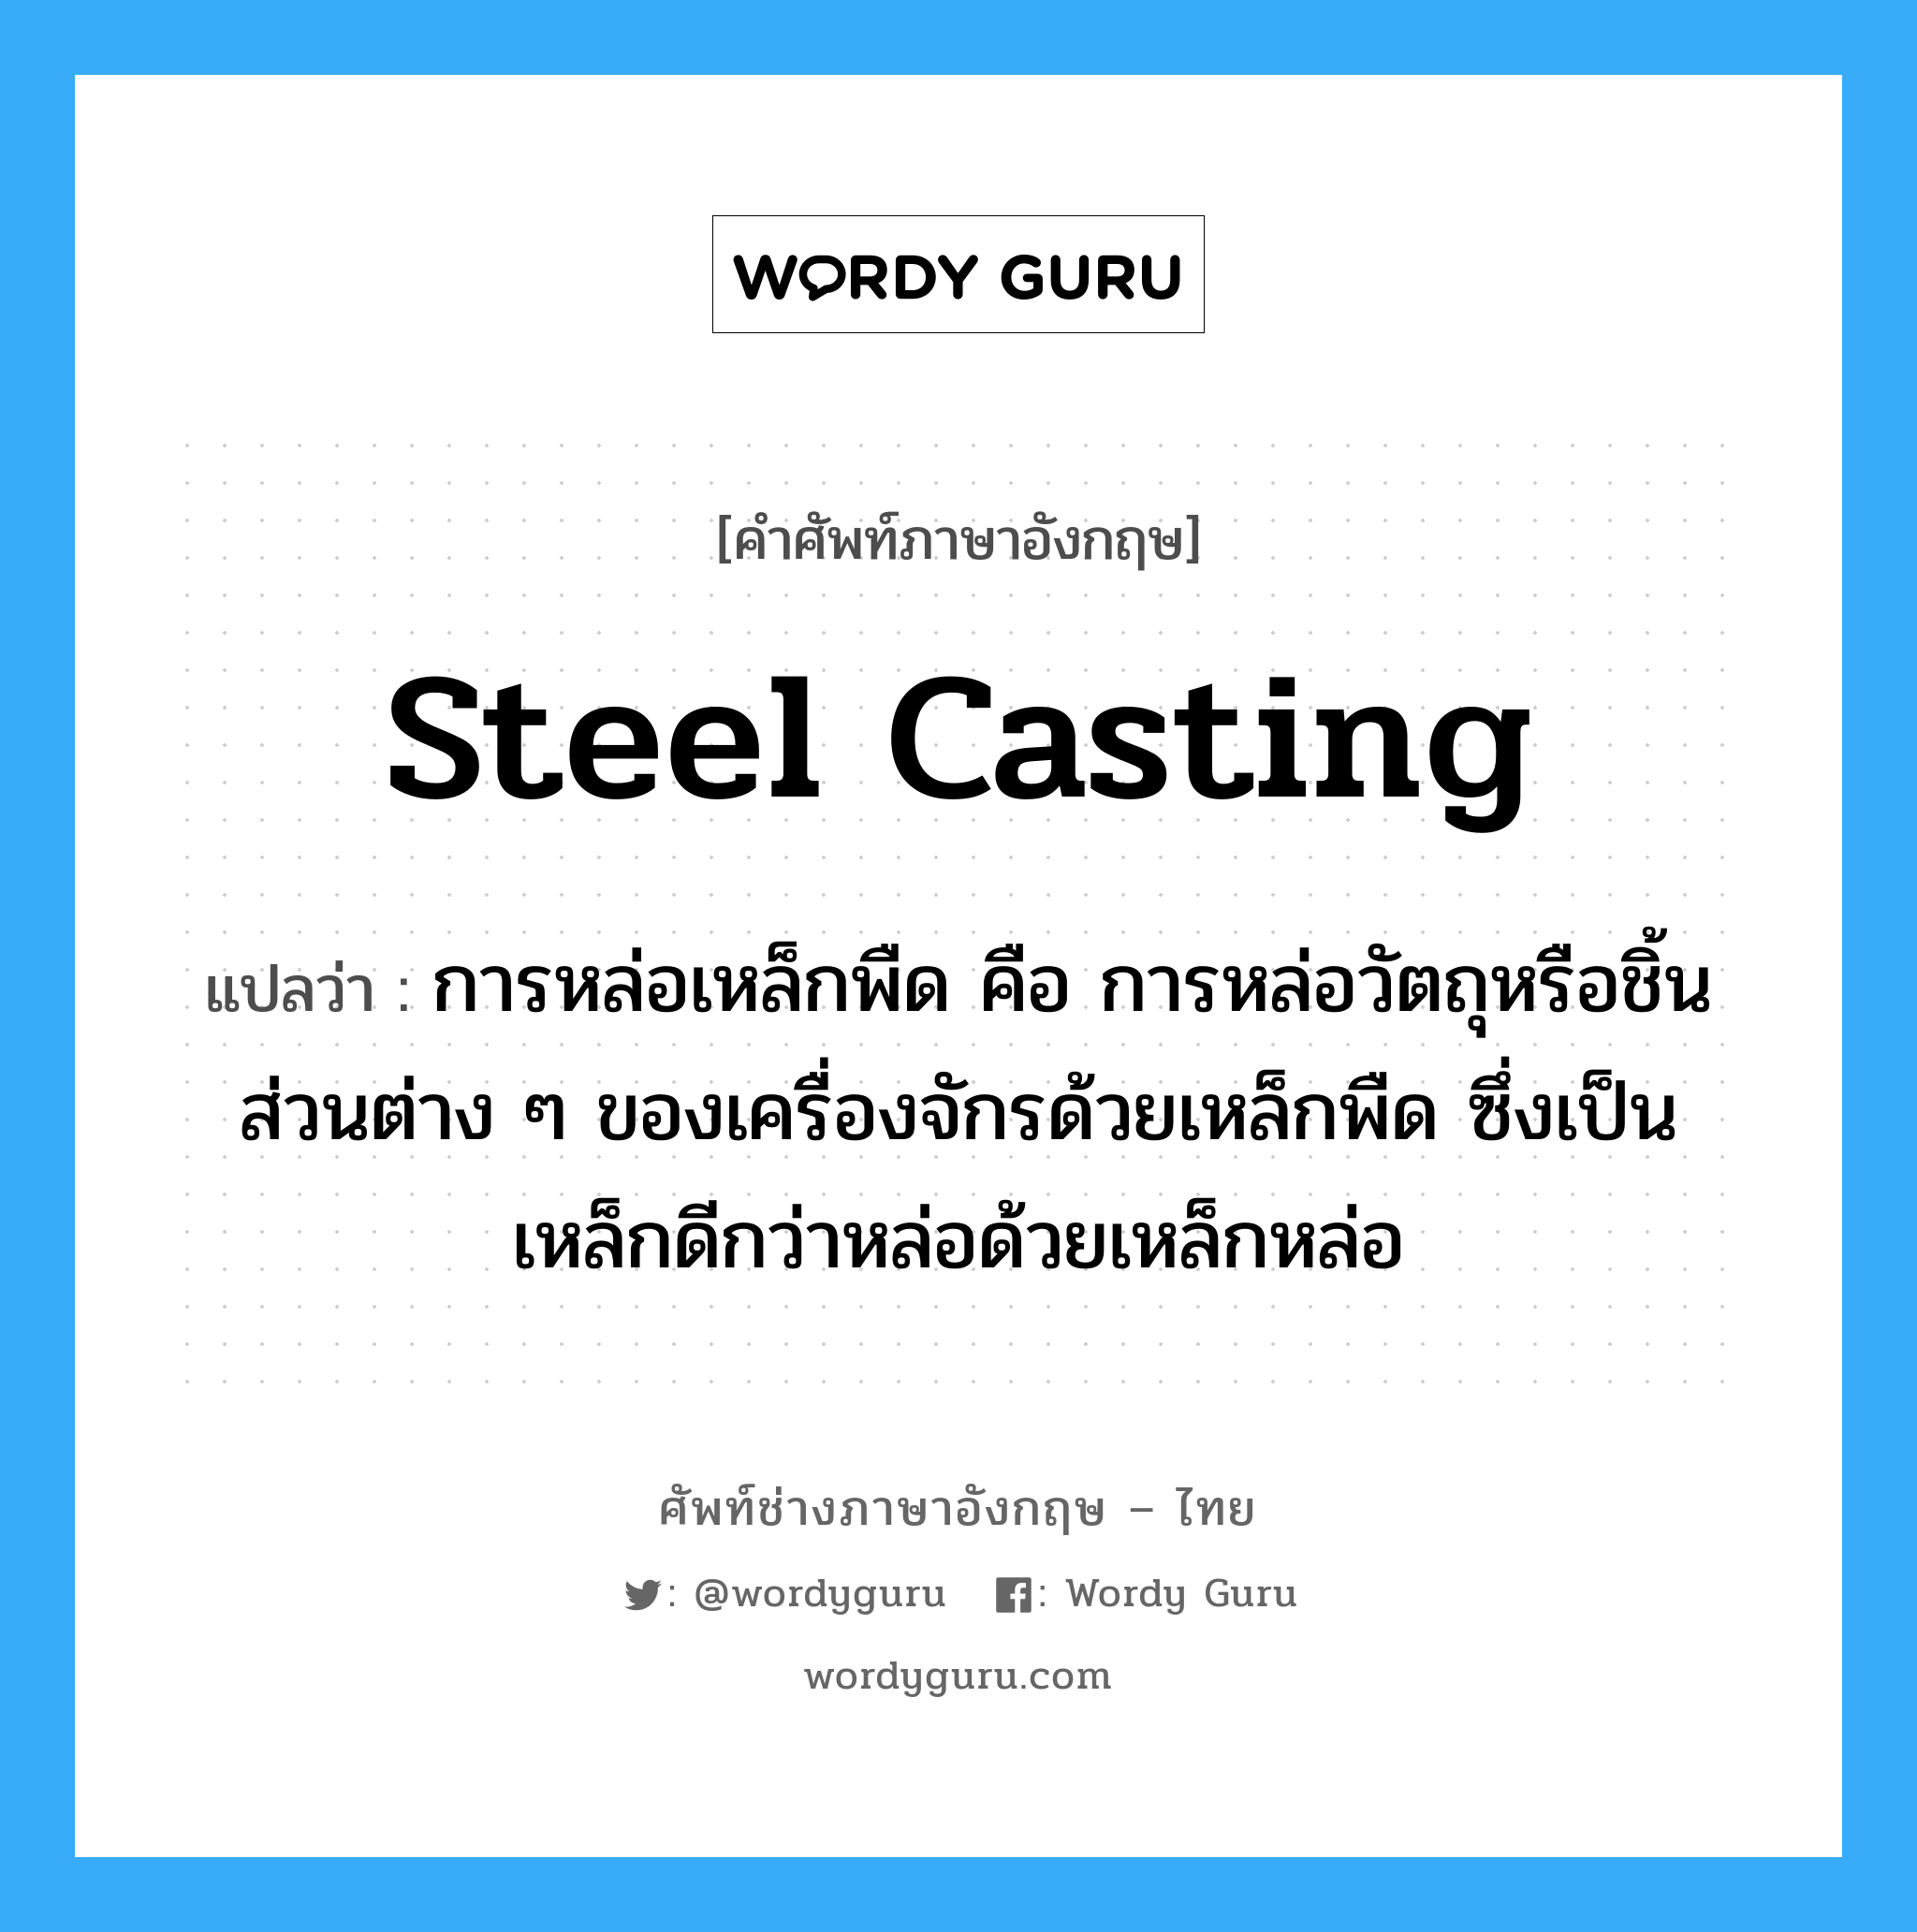 steel casting แปลว่า?, คำศัพท์ช่างภาษาอังกฤษ - ไทย steel casting คำศัพท์ภาษาอังกฤษ steel casting แปลว่า การหล่อเหล็กพืด คือ การหล่อวัตถุหรือชิ้นส่วนต่าง ๆ ของเครื่องจักรด้วยเหล็กพืด ซึ่งเป็นเหล็กดีกว่าหล่อด้วยเหล็กหล่อ